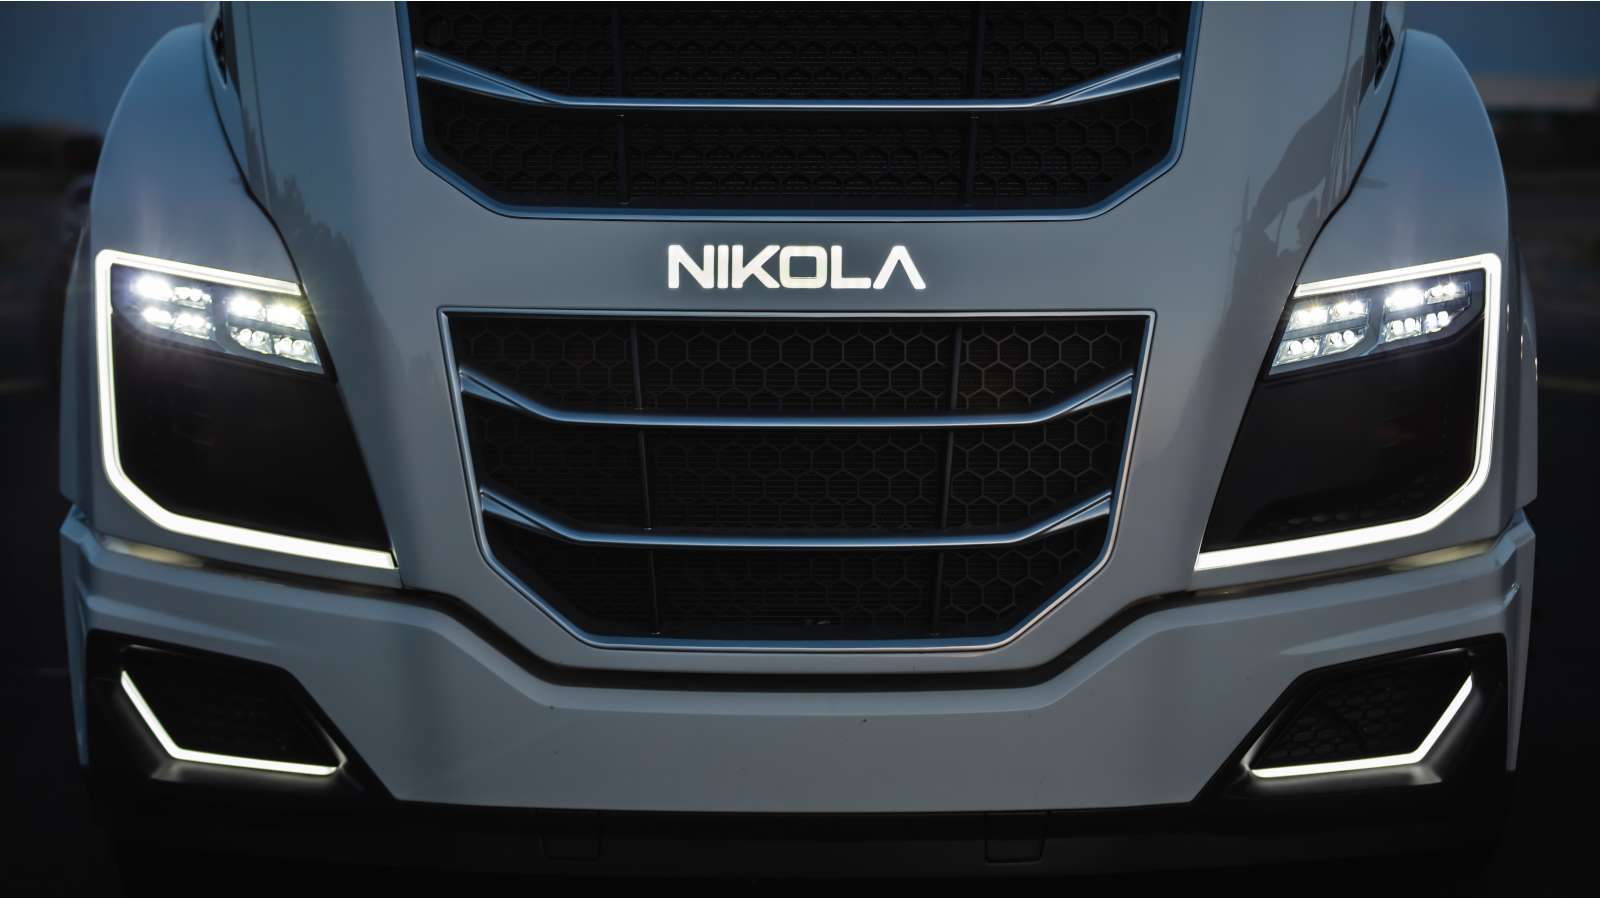 Nikola (NKLA) badge on the front of a matte black car